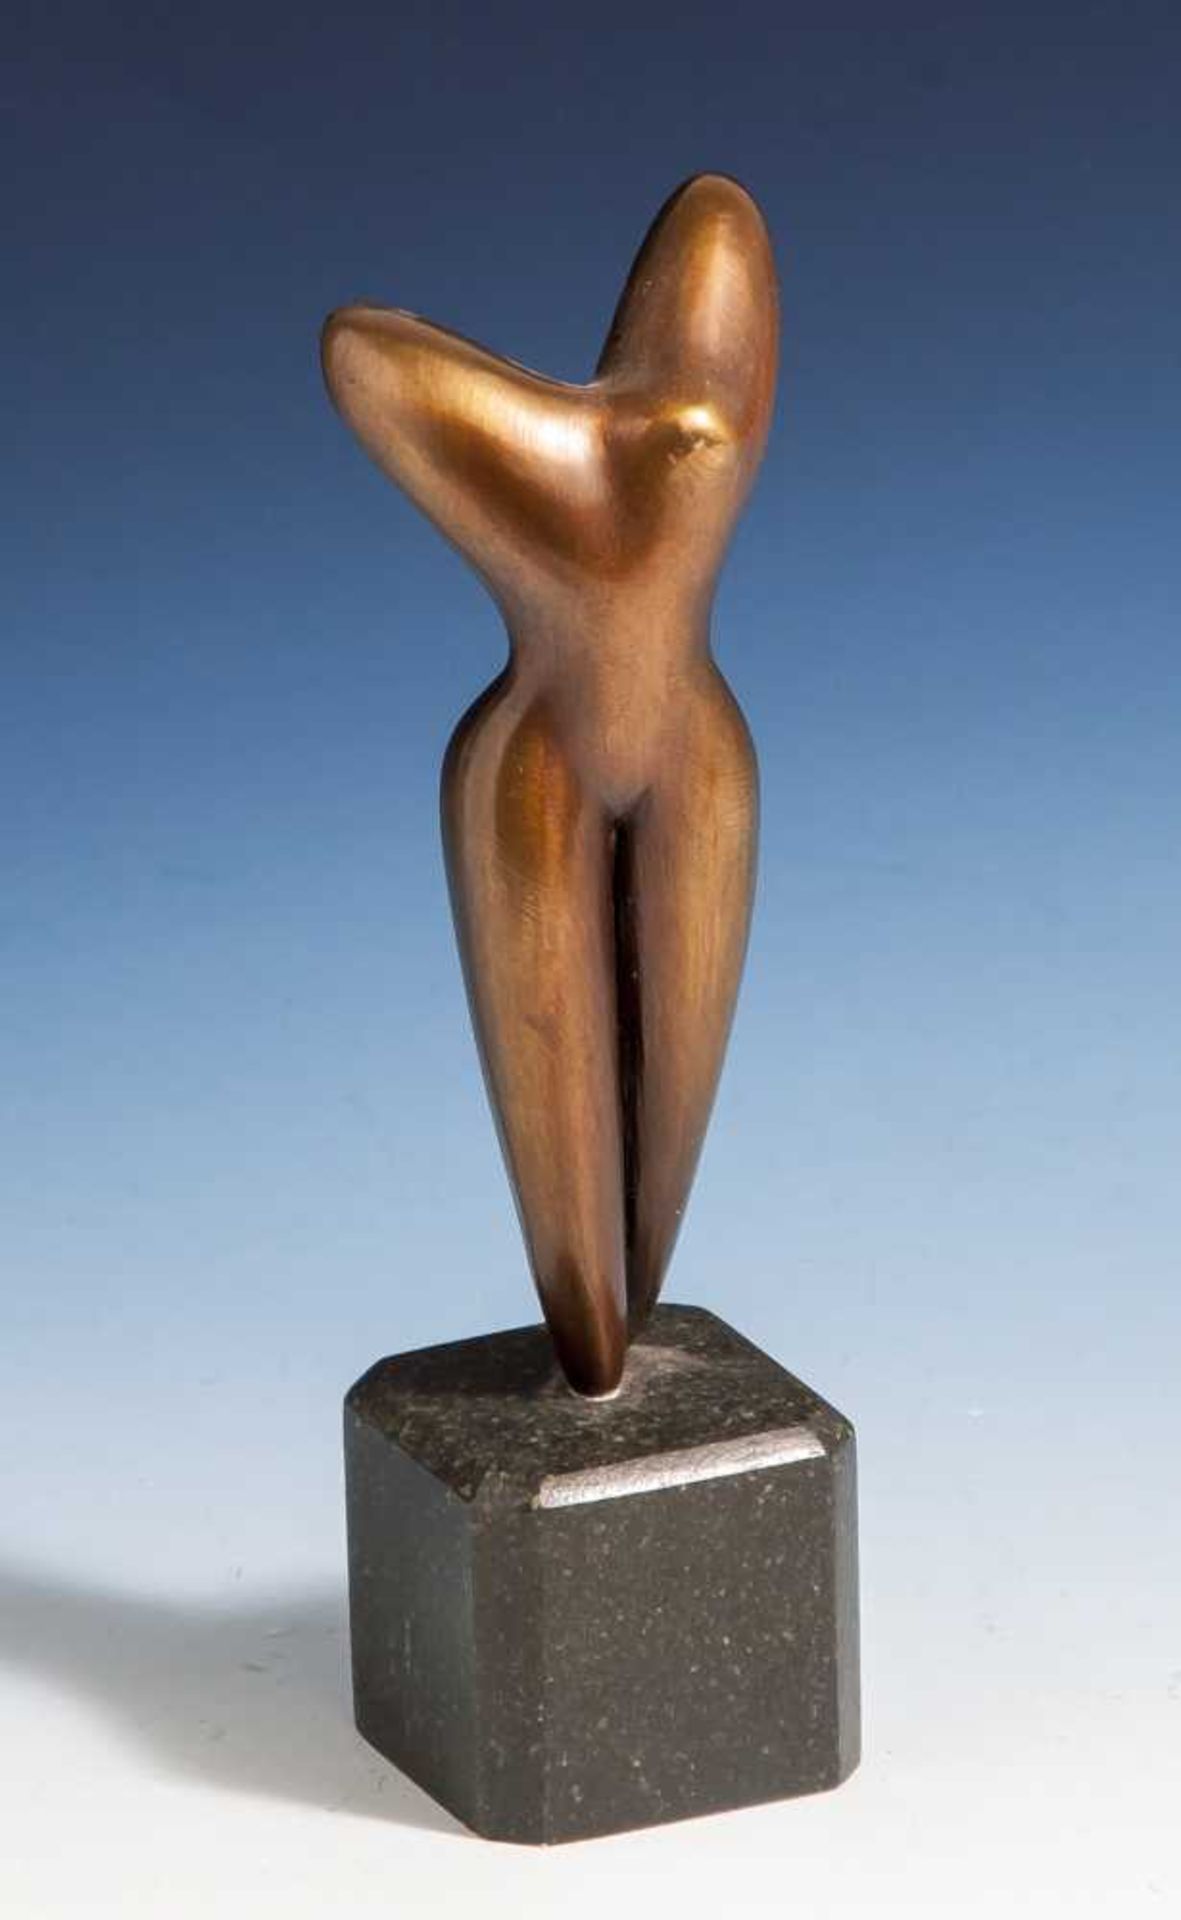 Piono, Marco (geboren 1959), "La Danse", Bronzeskulptur auf Steinsockel, rs. sig. u. num."1324/